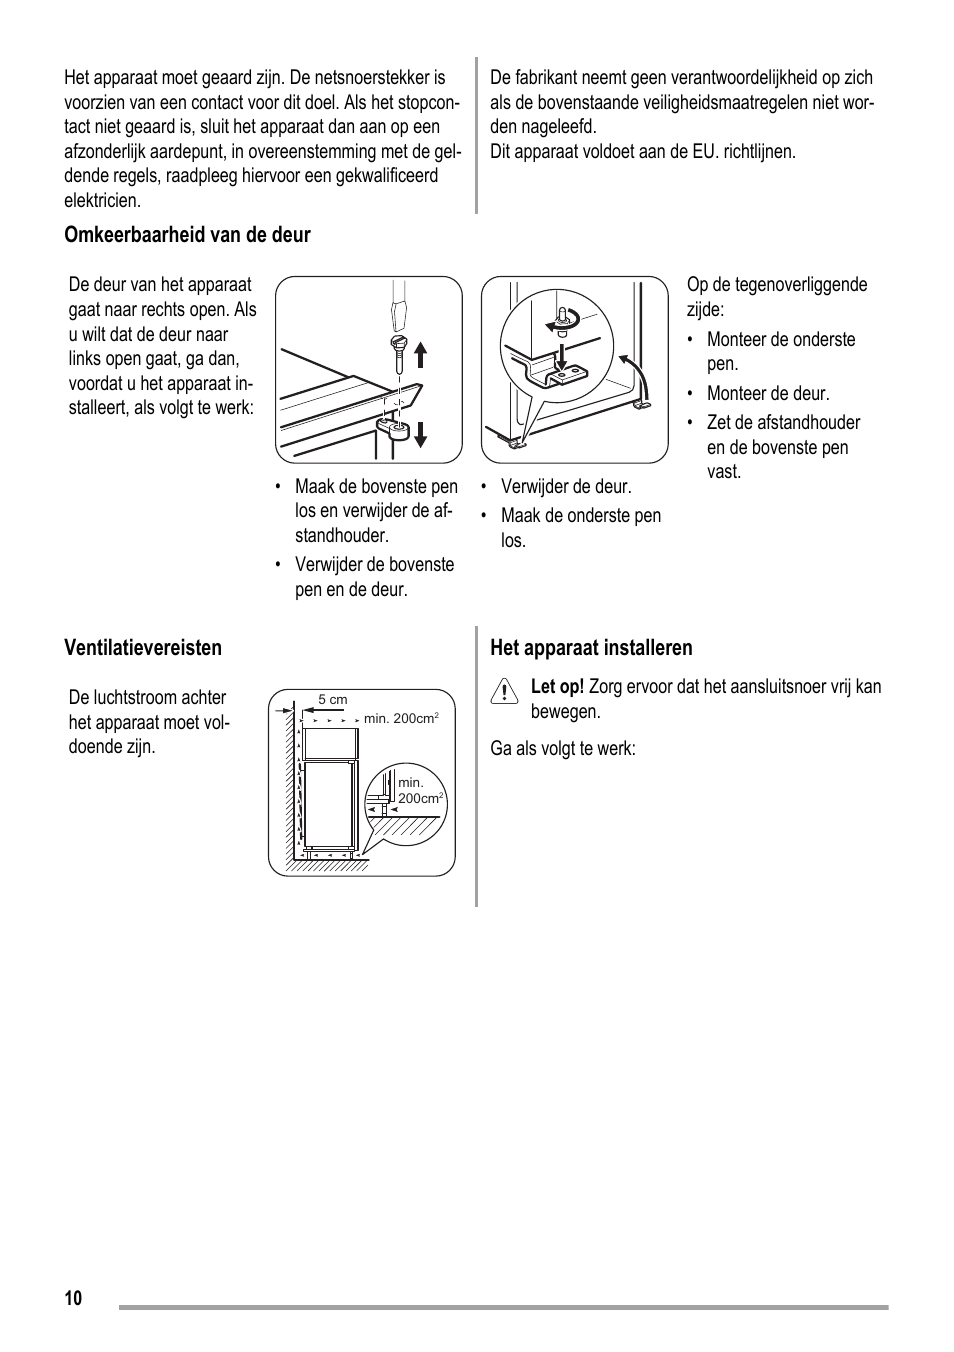 Omkeerbaarheid van de deur, Ventilatievereisten, Het apparaat installeren | ZANKER KBA 17401 SK User Manual | Page 10 / 52